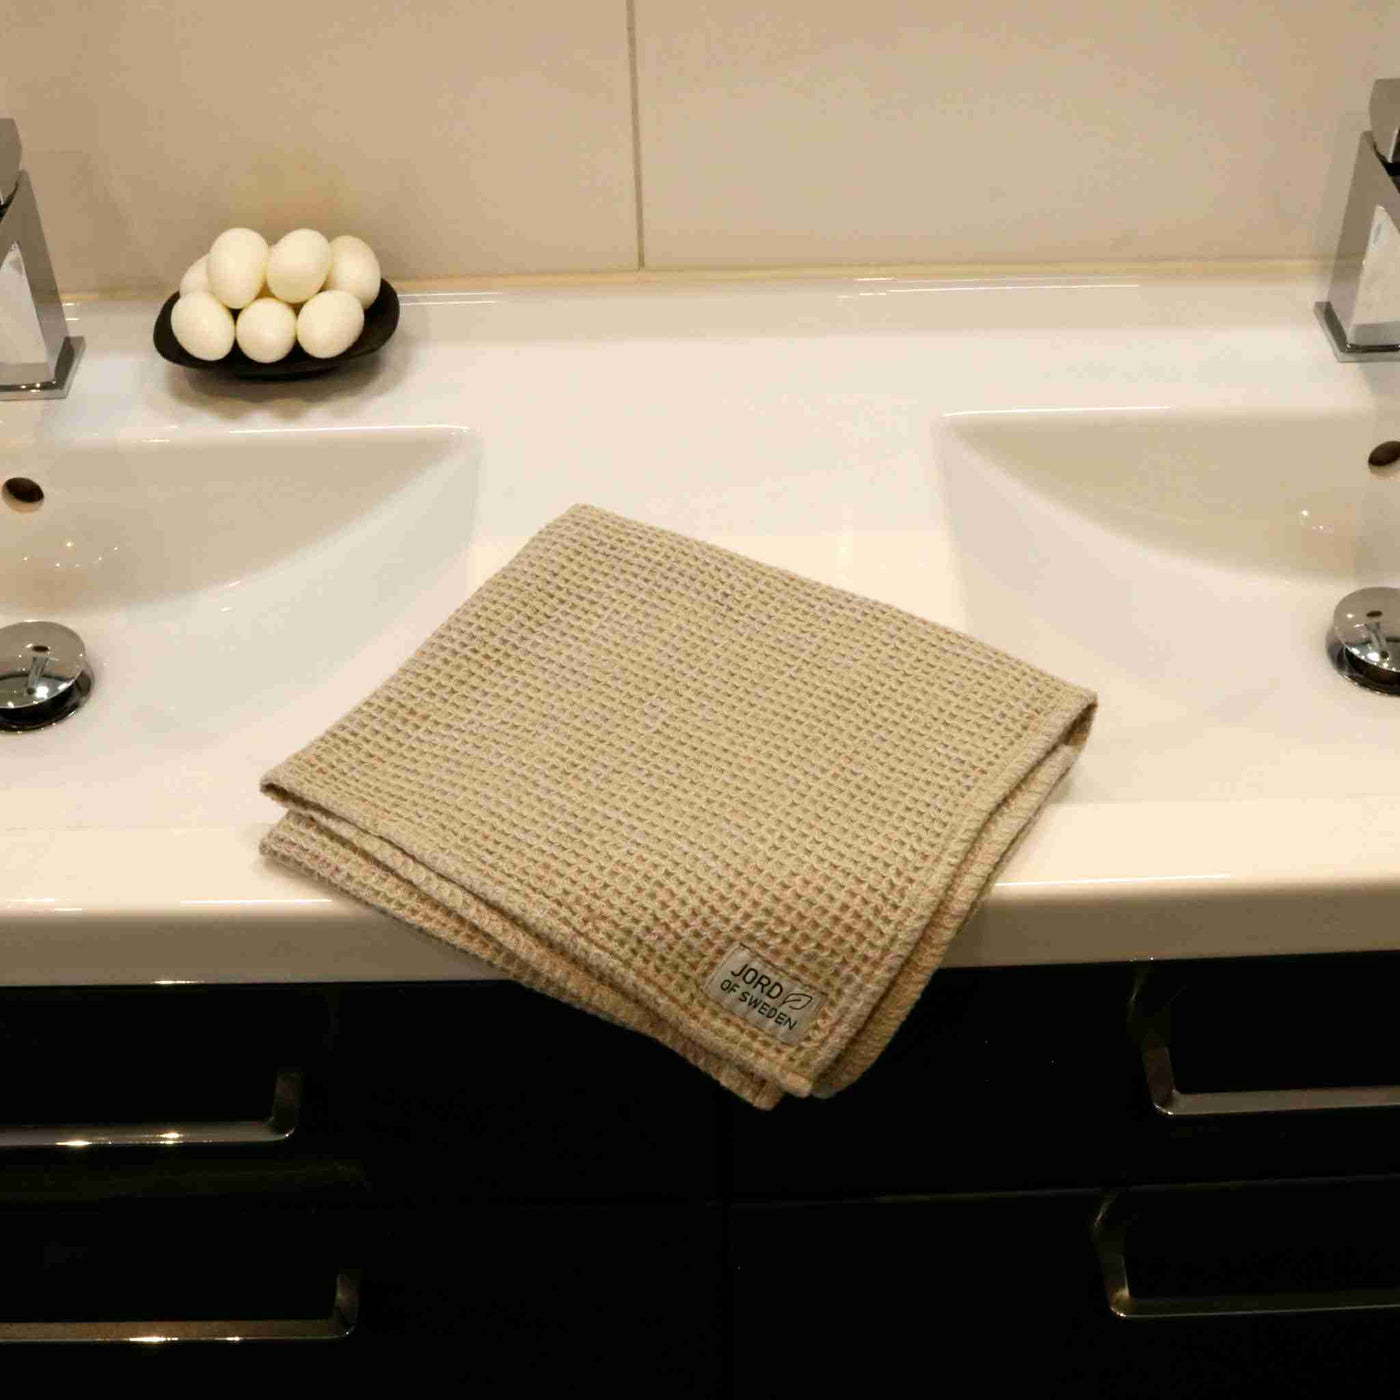 Beige linen towels